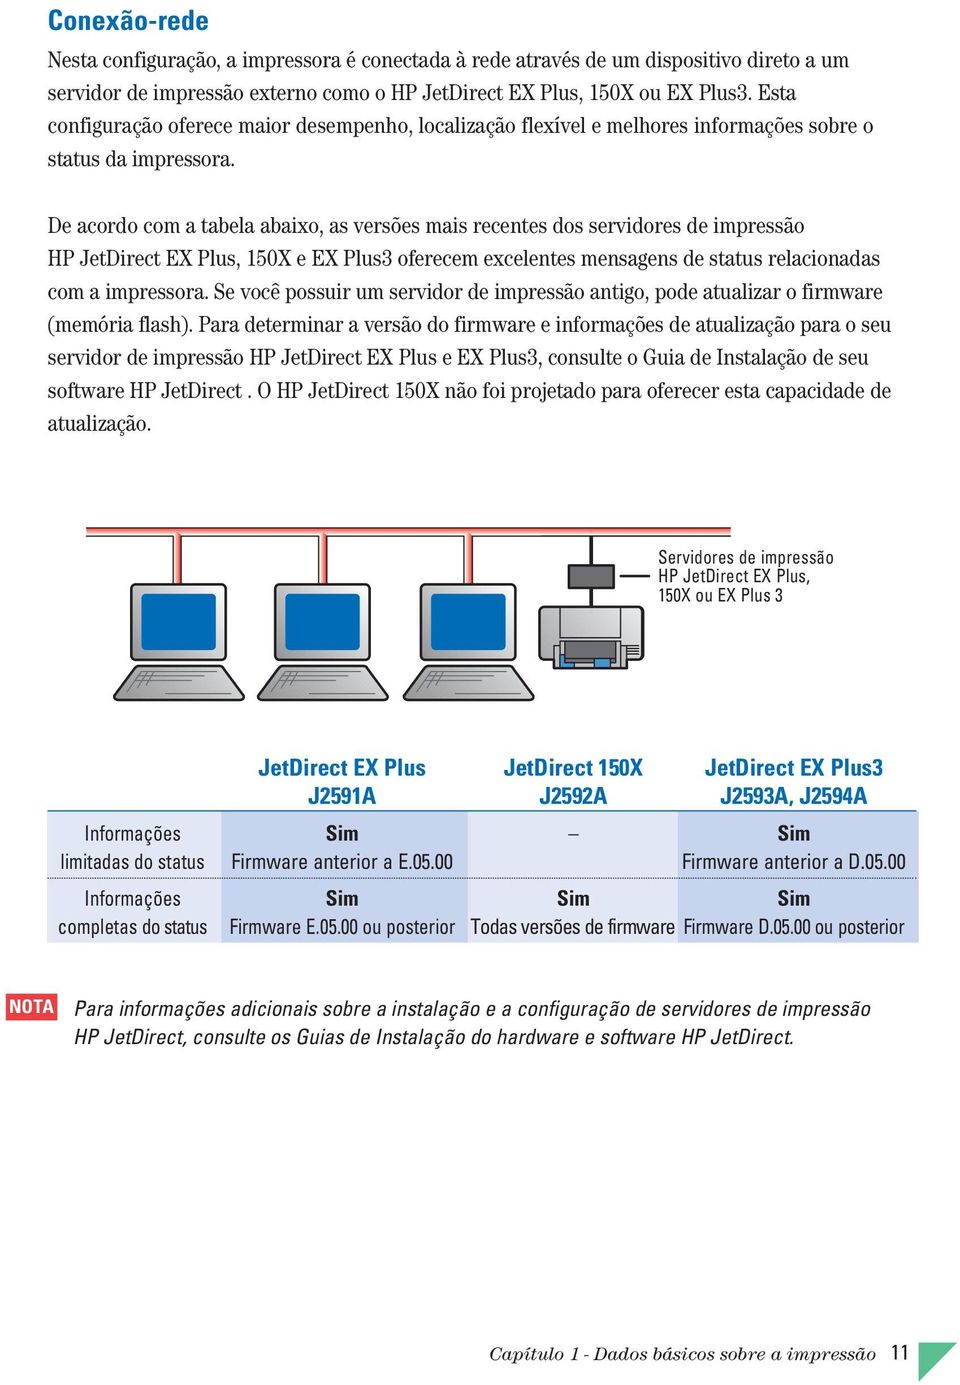 De acordo com a tabela abaixo, as versões mais recentes dos servidores de impressão HP JetDirect EX Plus, 150X e EX Plus3 oferecem excelentes mensagens de status relacionadas com a impressora.